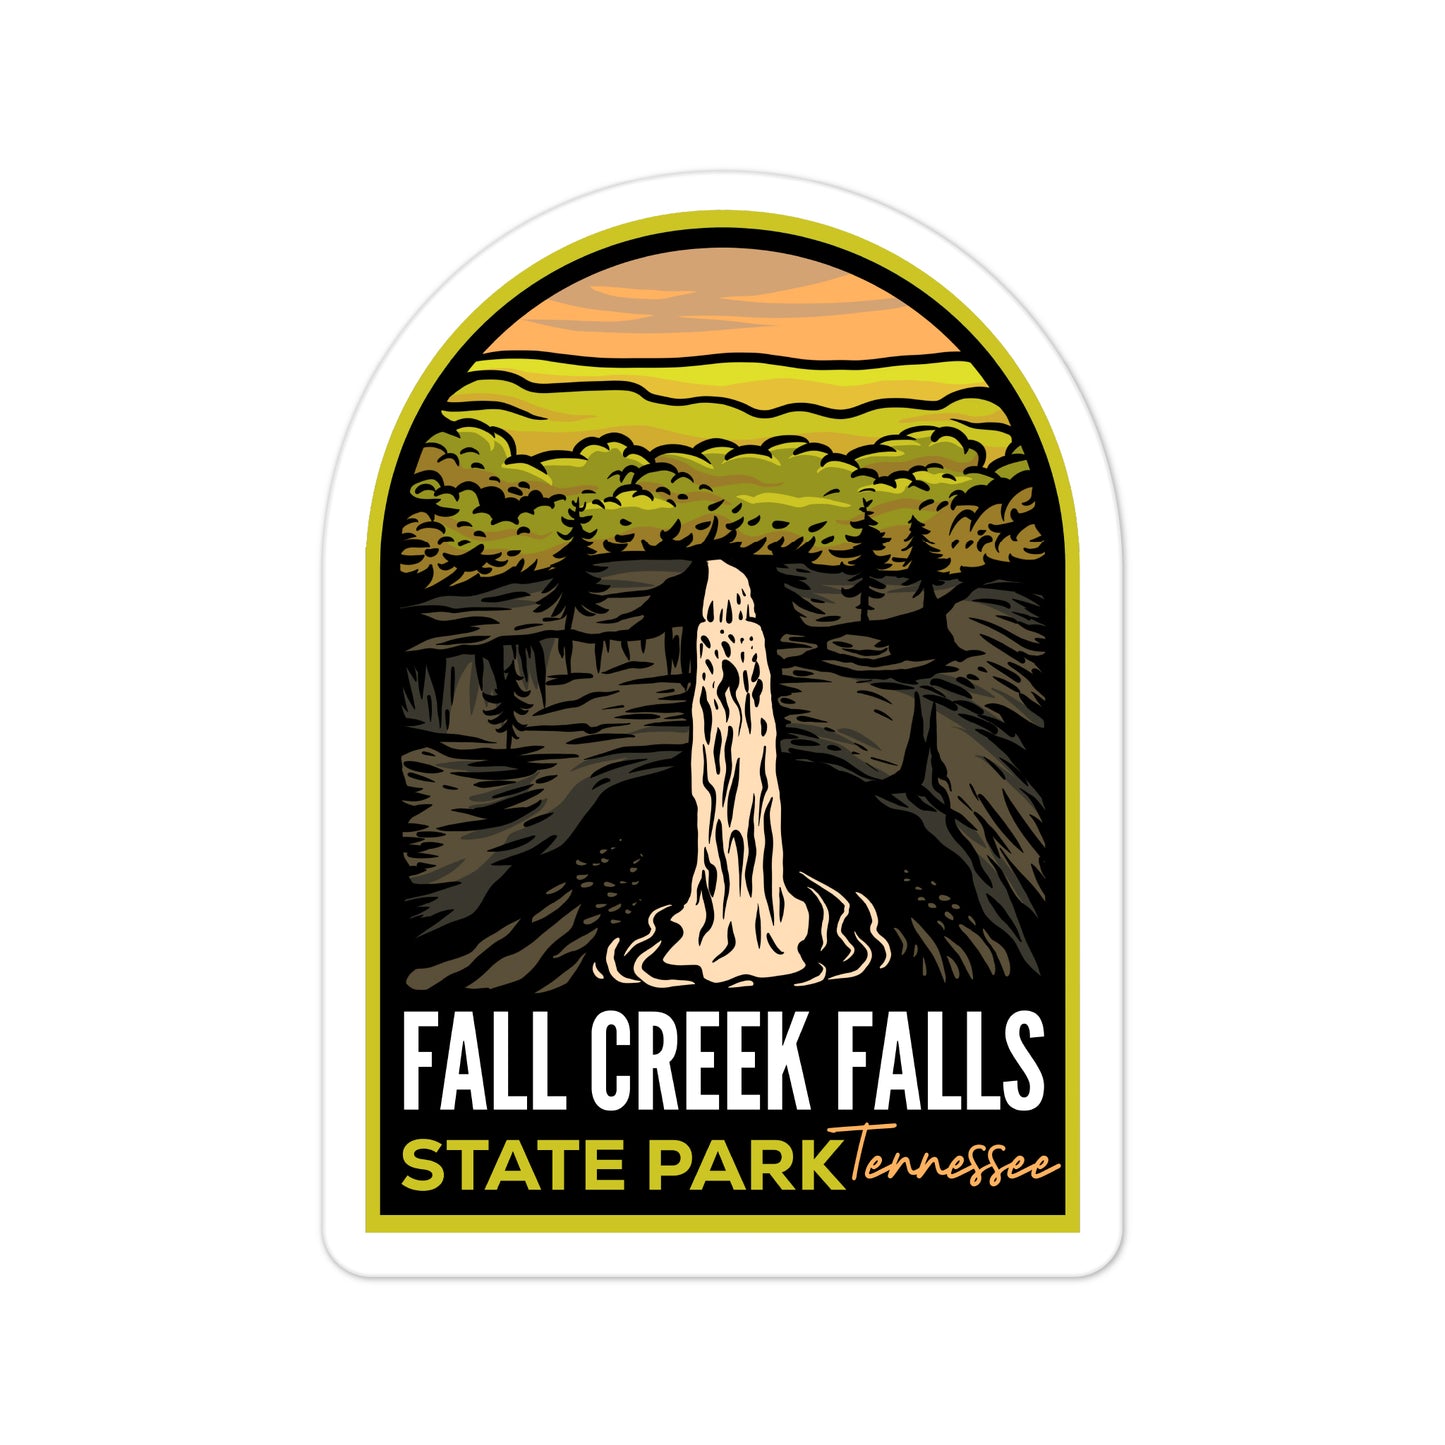 A sticker of Fall Creek Falls